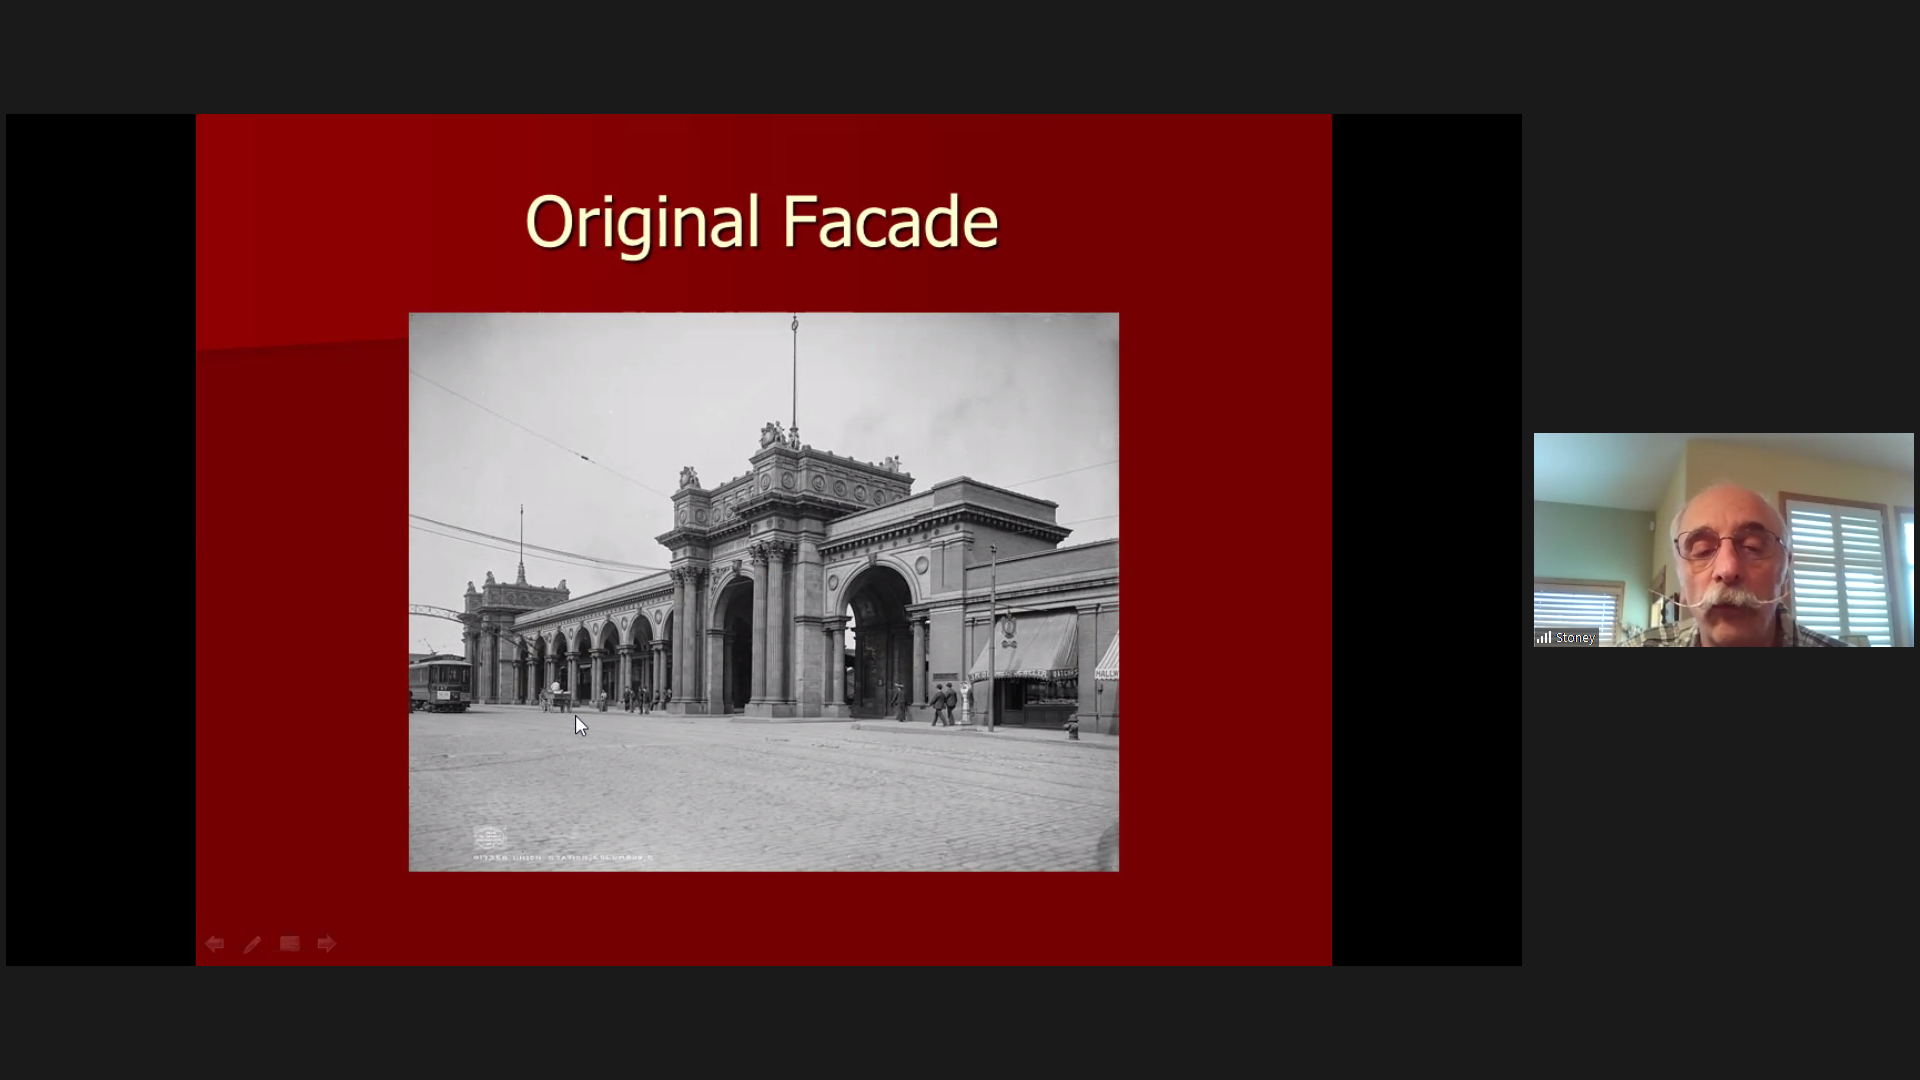 Original Facade